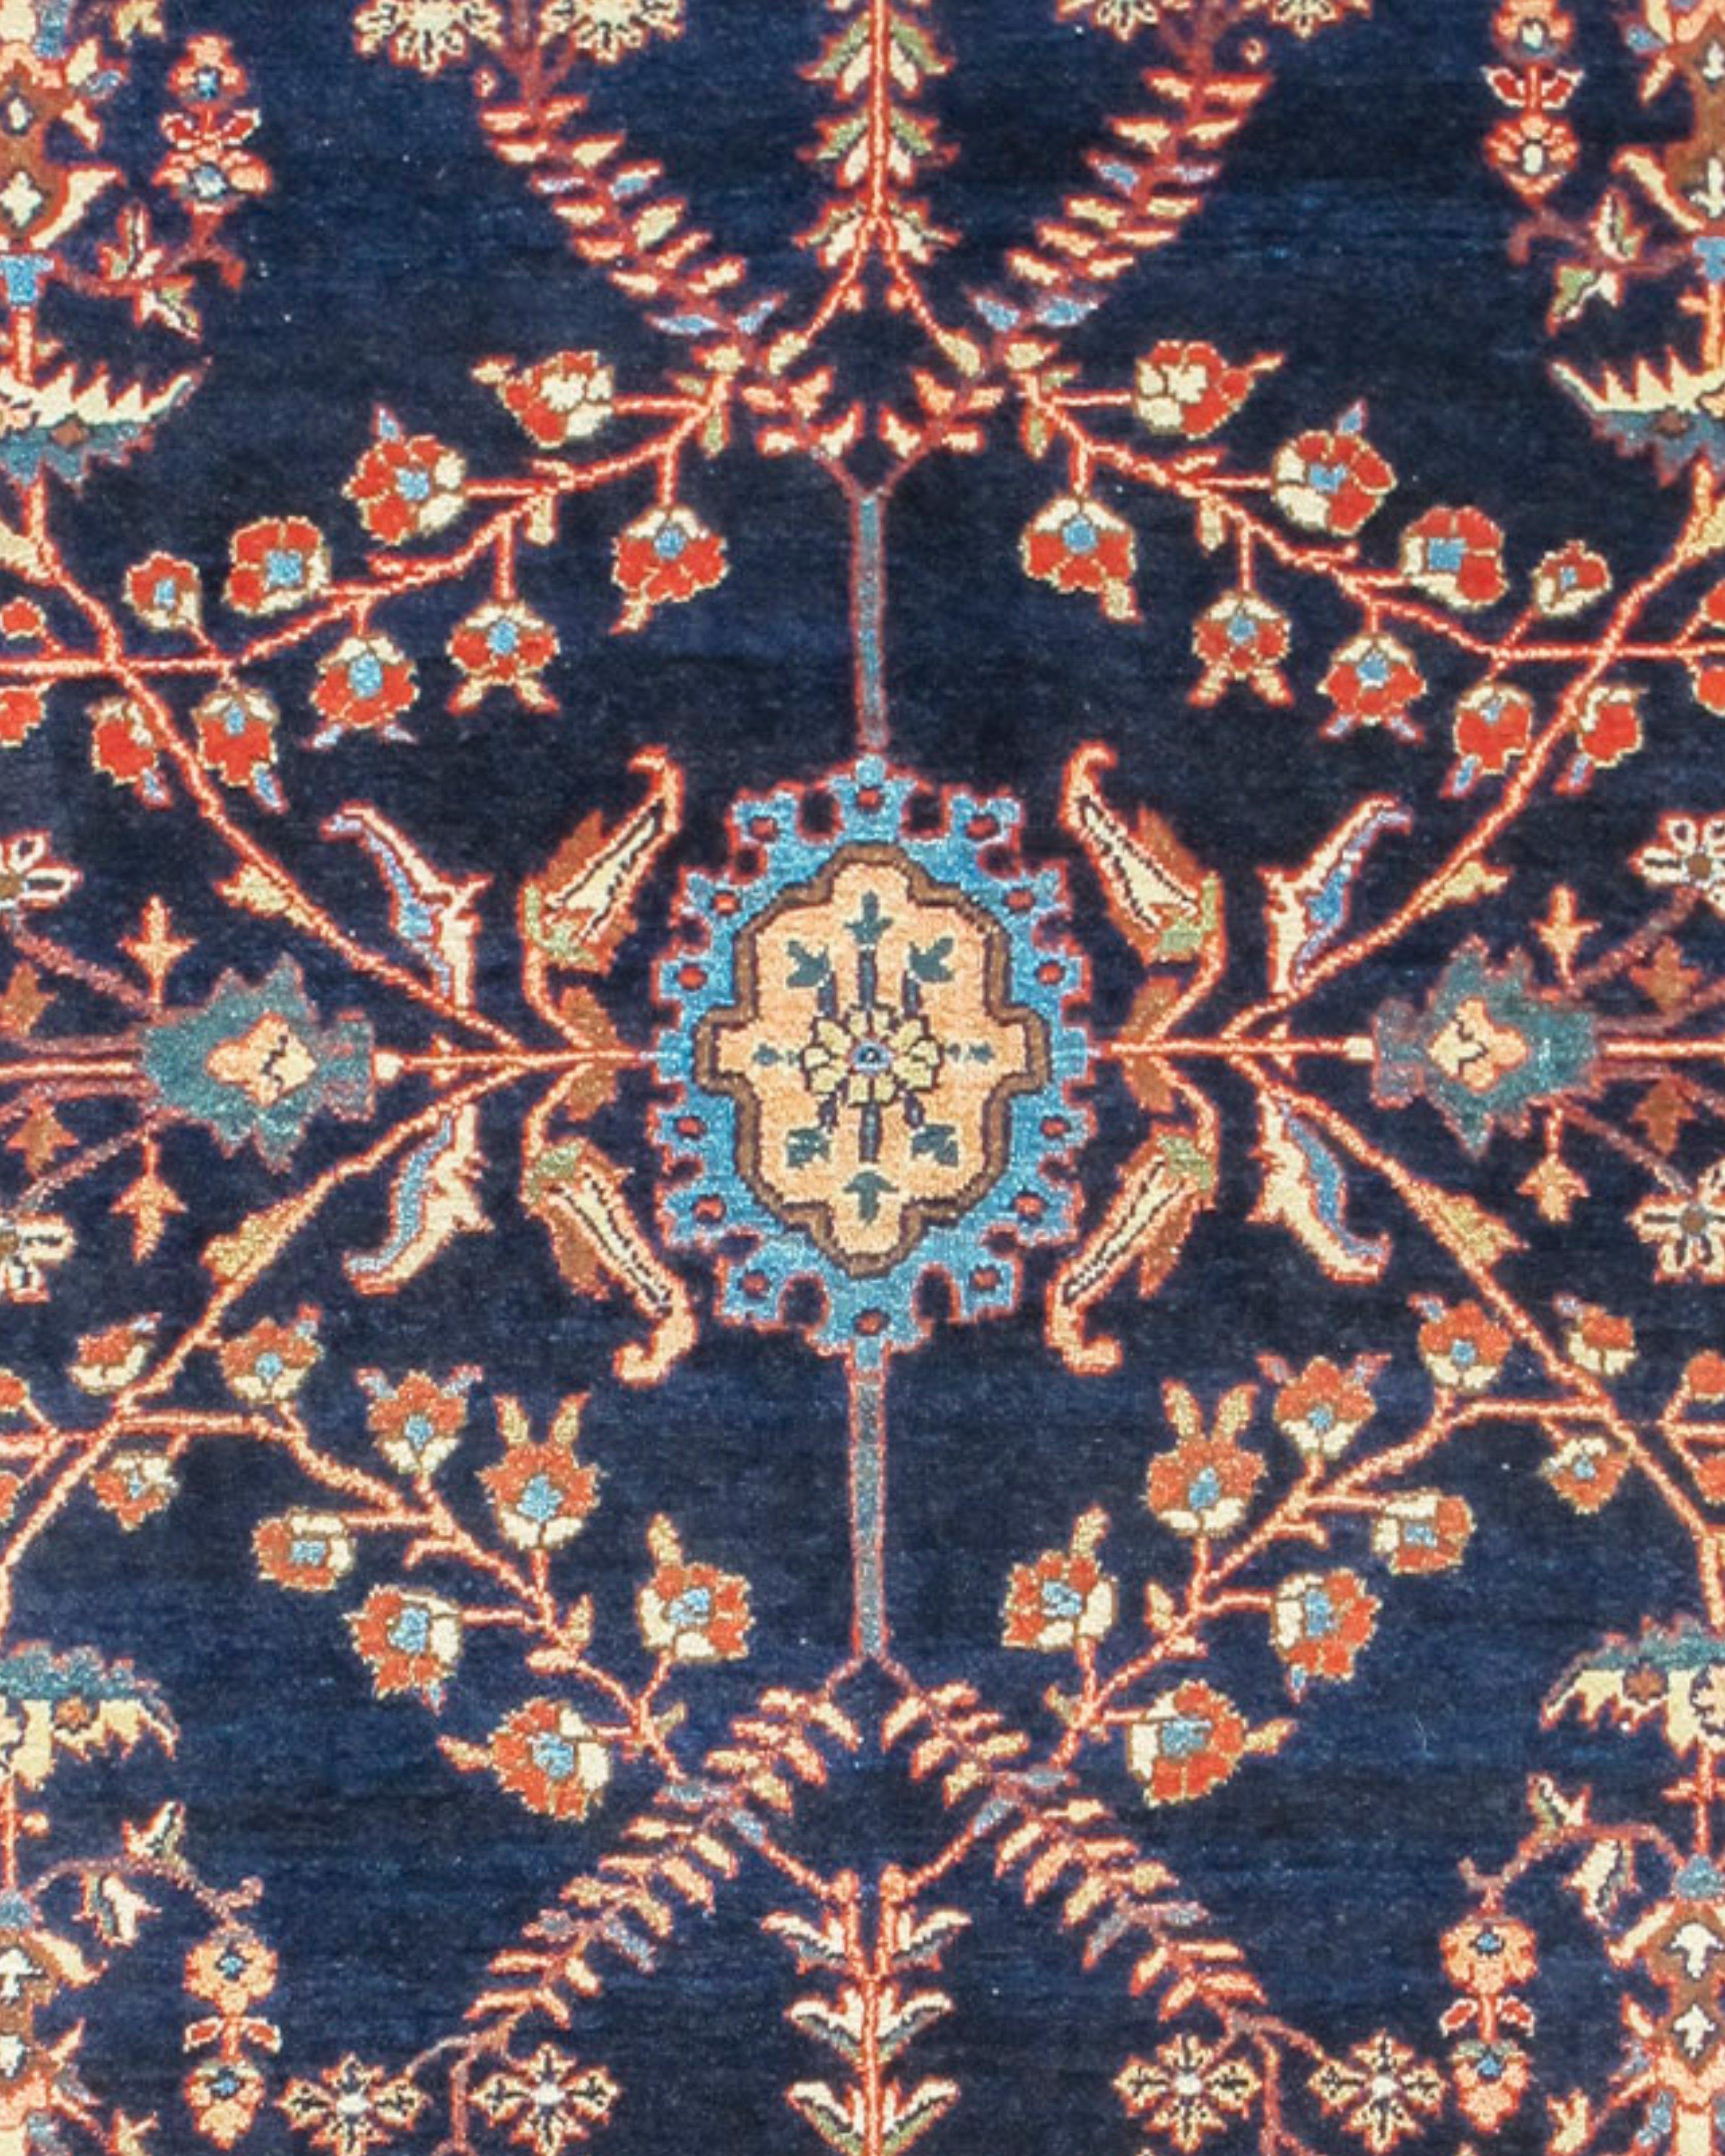 Sarouk-Teppich, frühes 20. Jahrhundert

Dieser raffinierte antike Sarouk-Teppich aus Zentralpersien zeichnet auf elegante Weise eine Vielzahl realistischer und stilisierter Girlanden und blühender Pflanzen in einem mäandernden Netz, das um ein